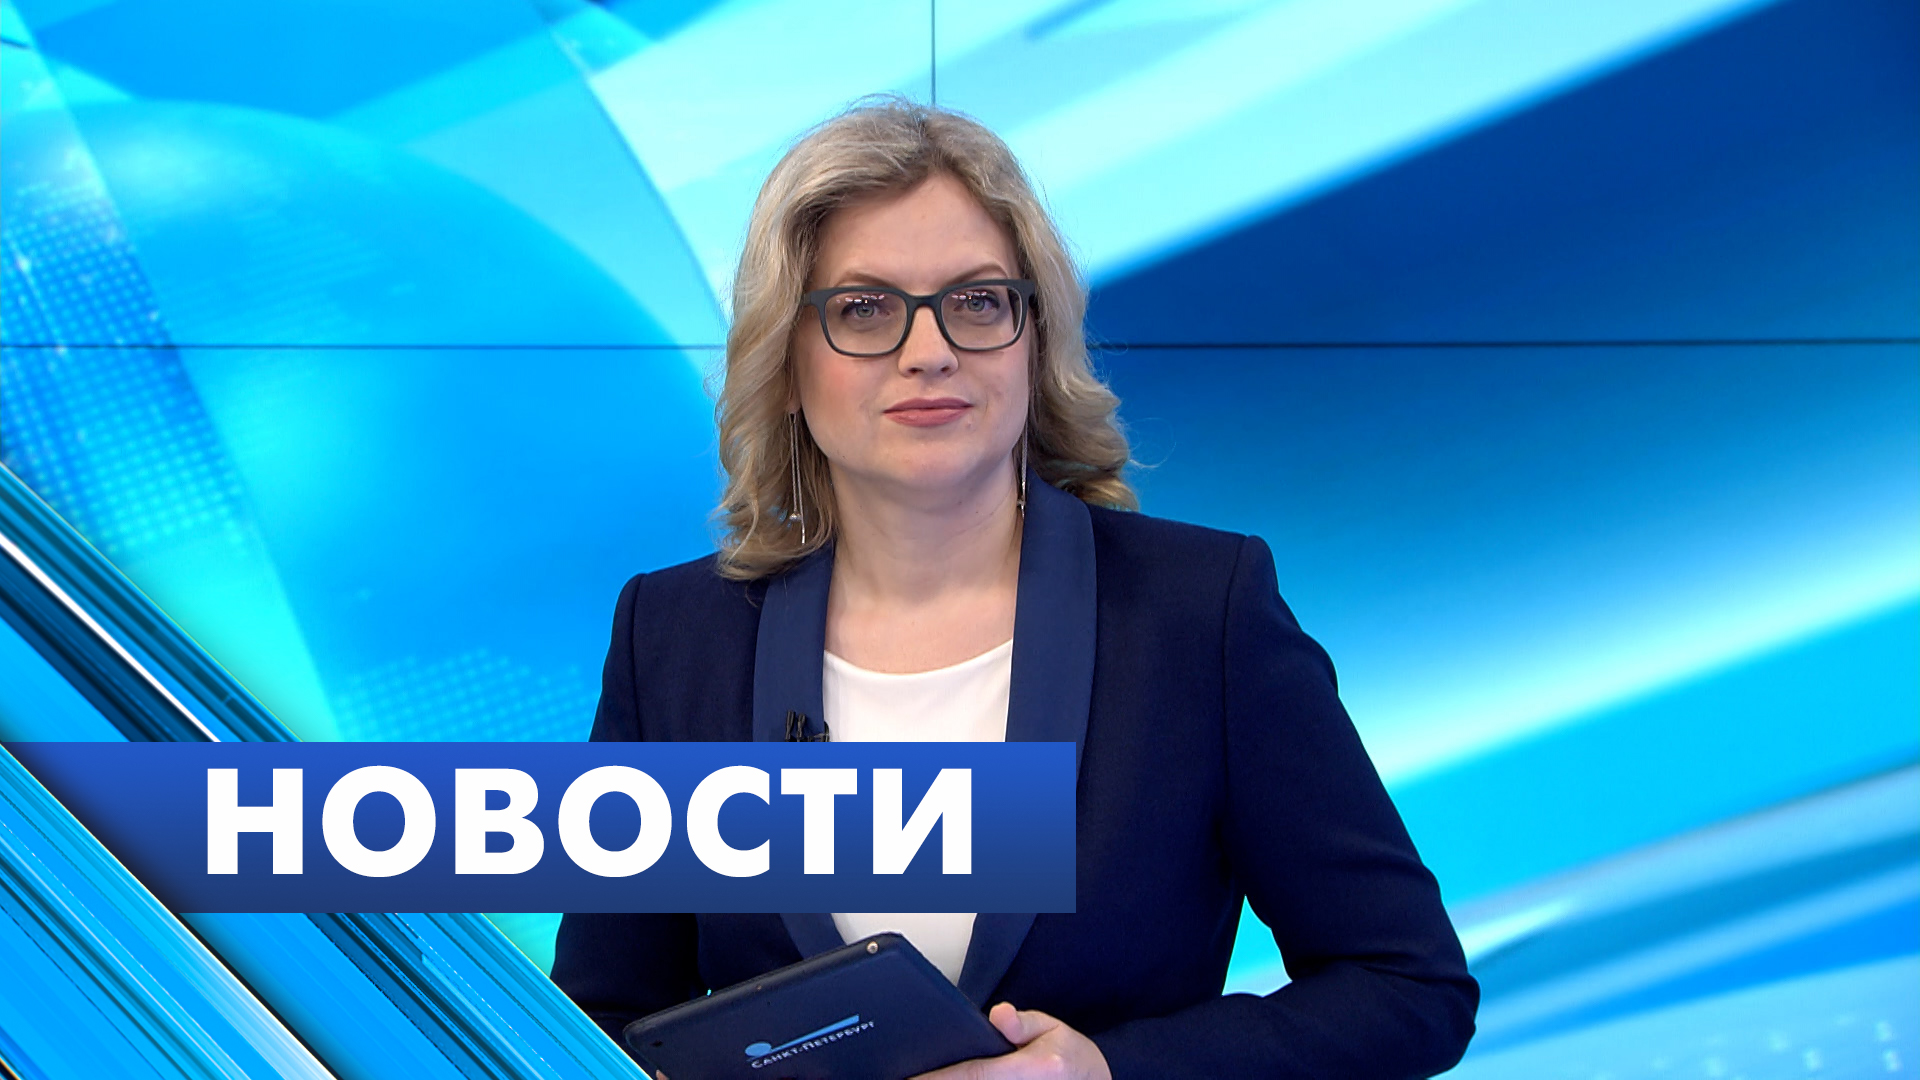 Главные новости Петербурга / 25 февраля